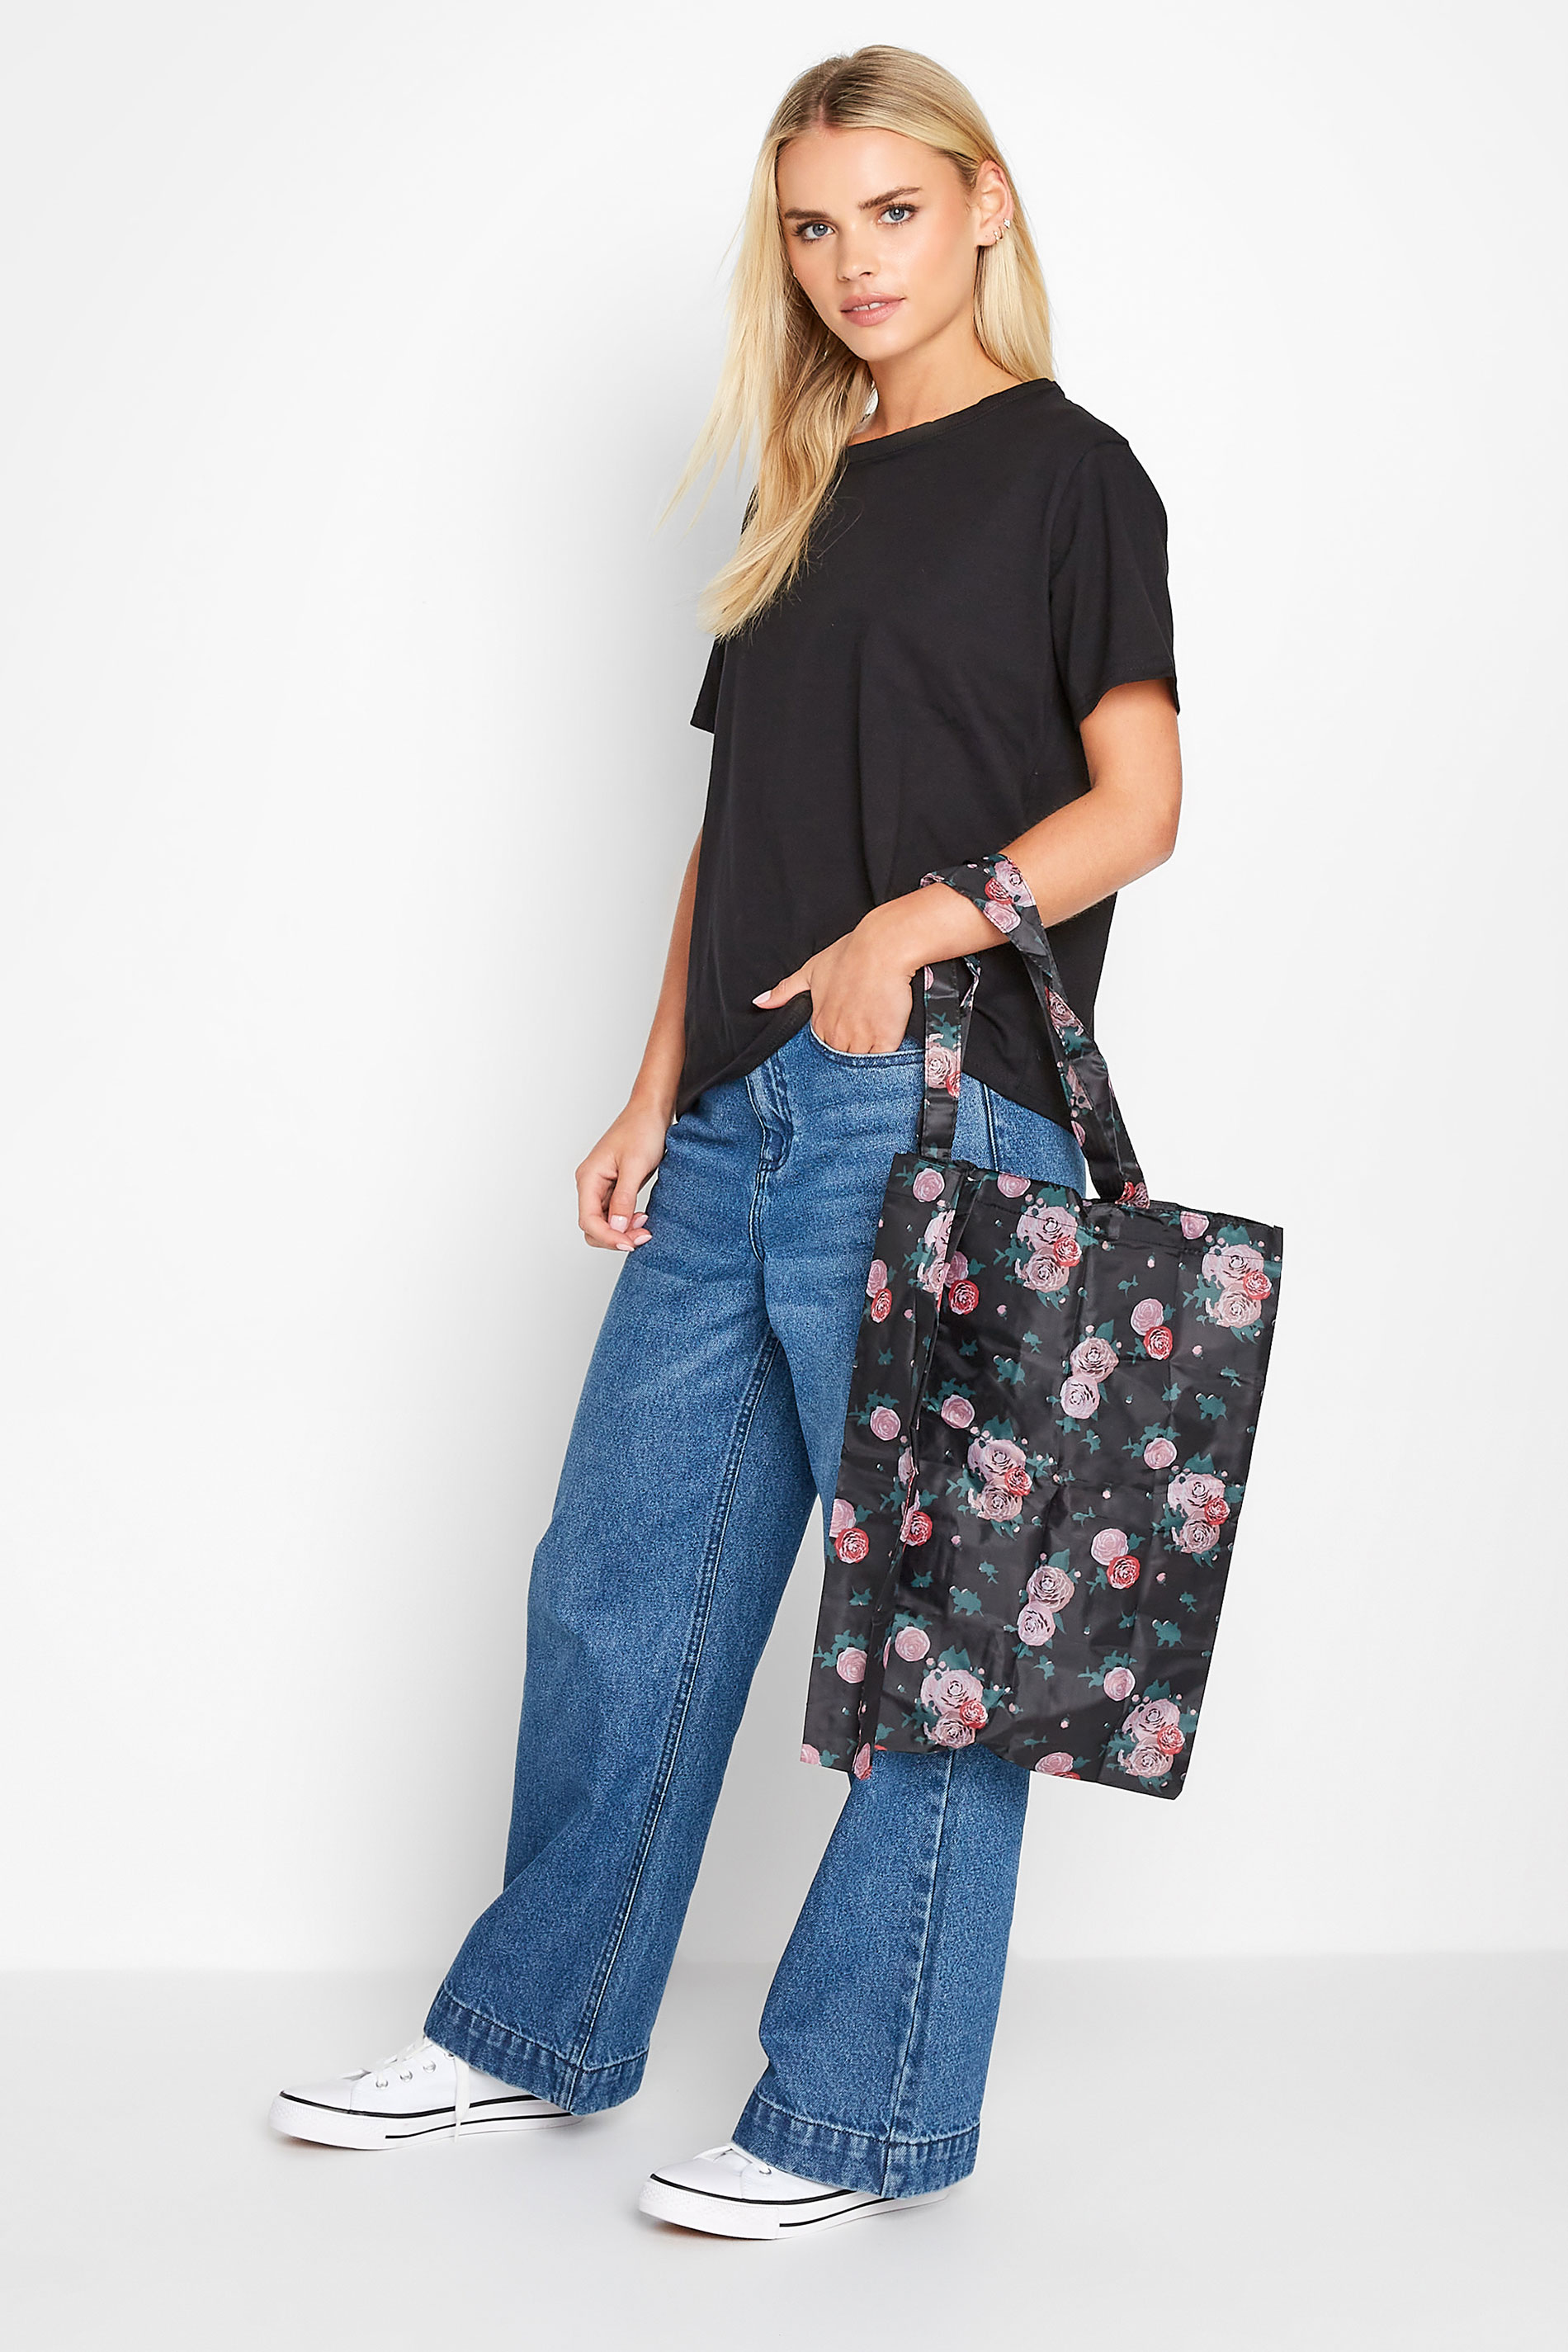 Black Floral Fold Up Shopper Bag 1